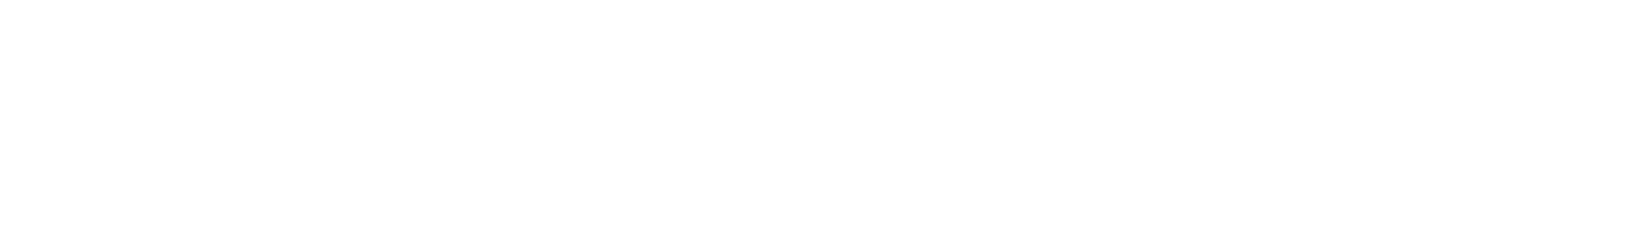 ev lab logo white